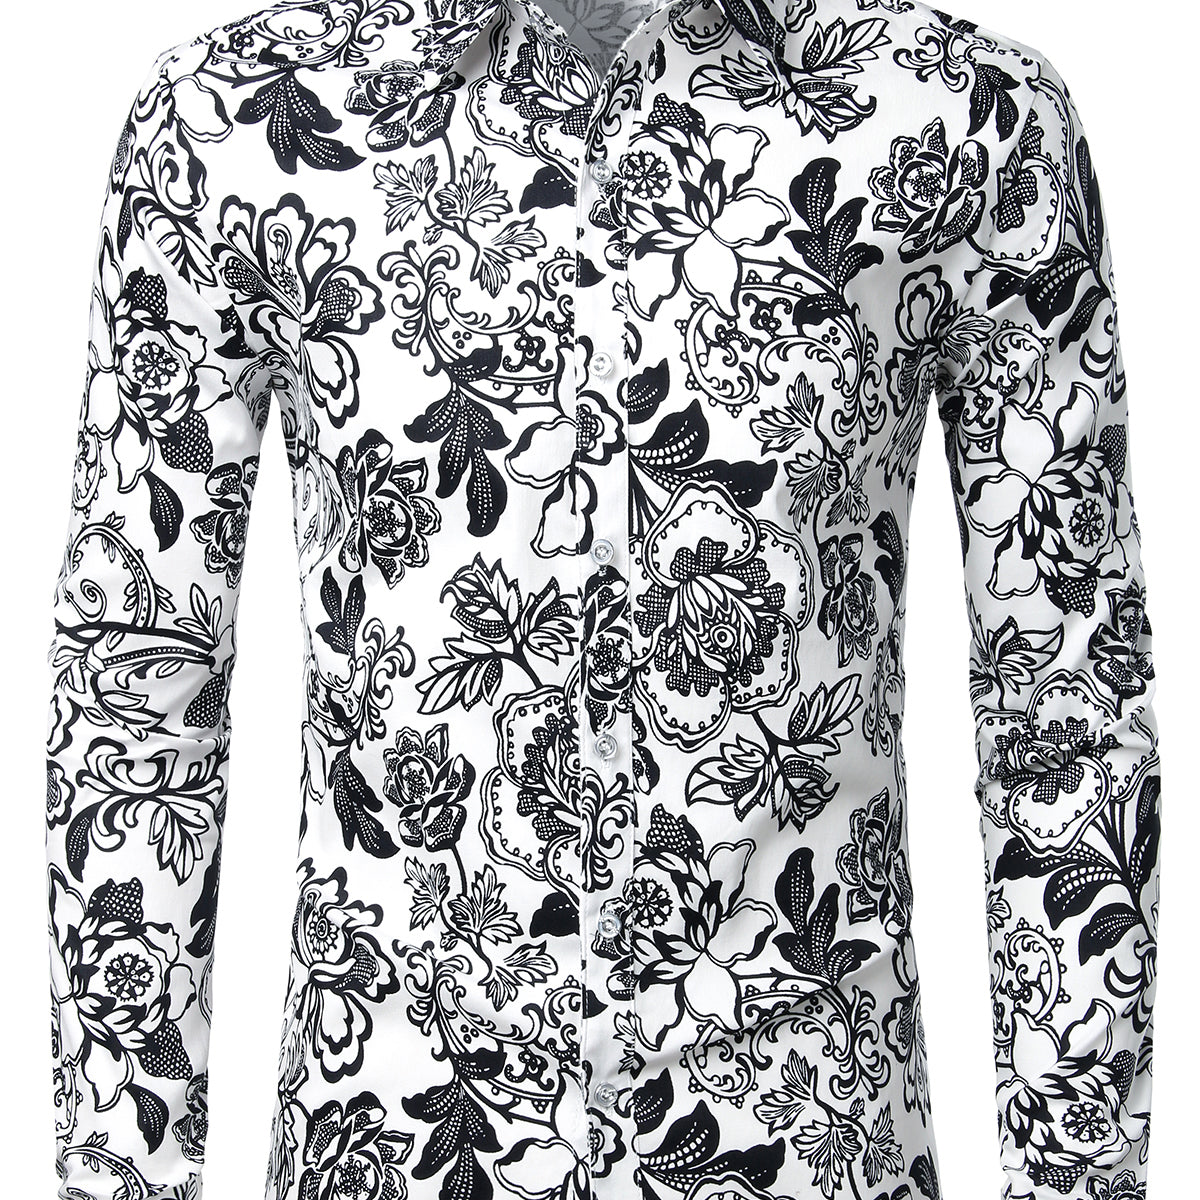 Chemise en coton imprimé de  motifs floraux homme